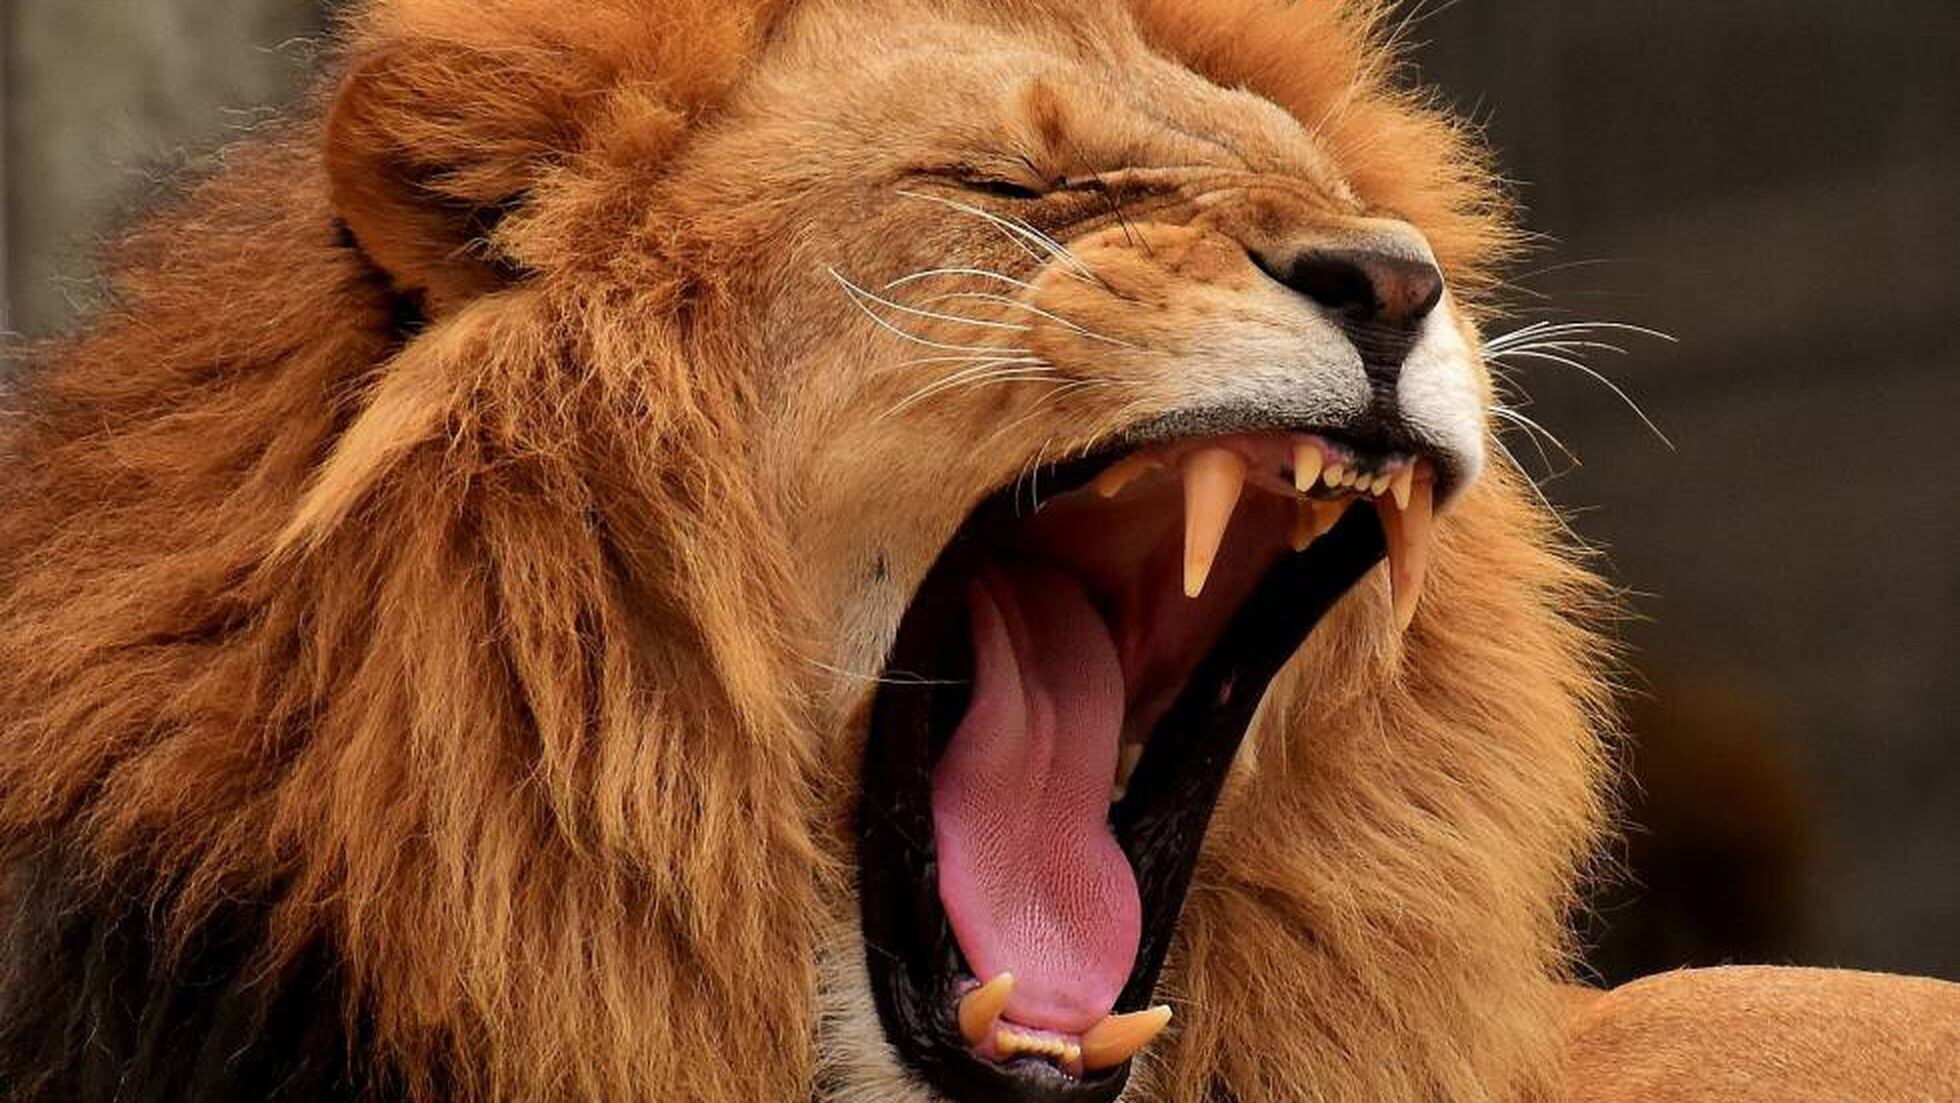 Una manada de leones devora a al menos tres cazadores furtivos en Sudáfrica  | Mundo animal | EL PAÍS